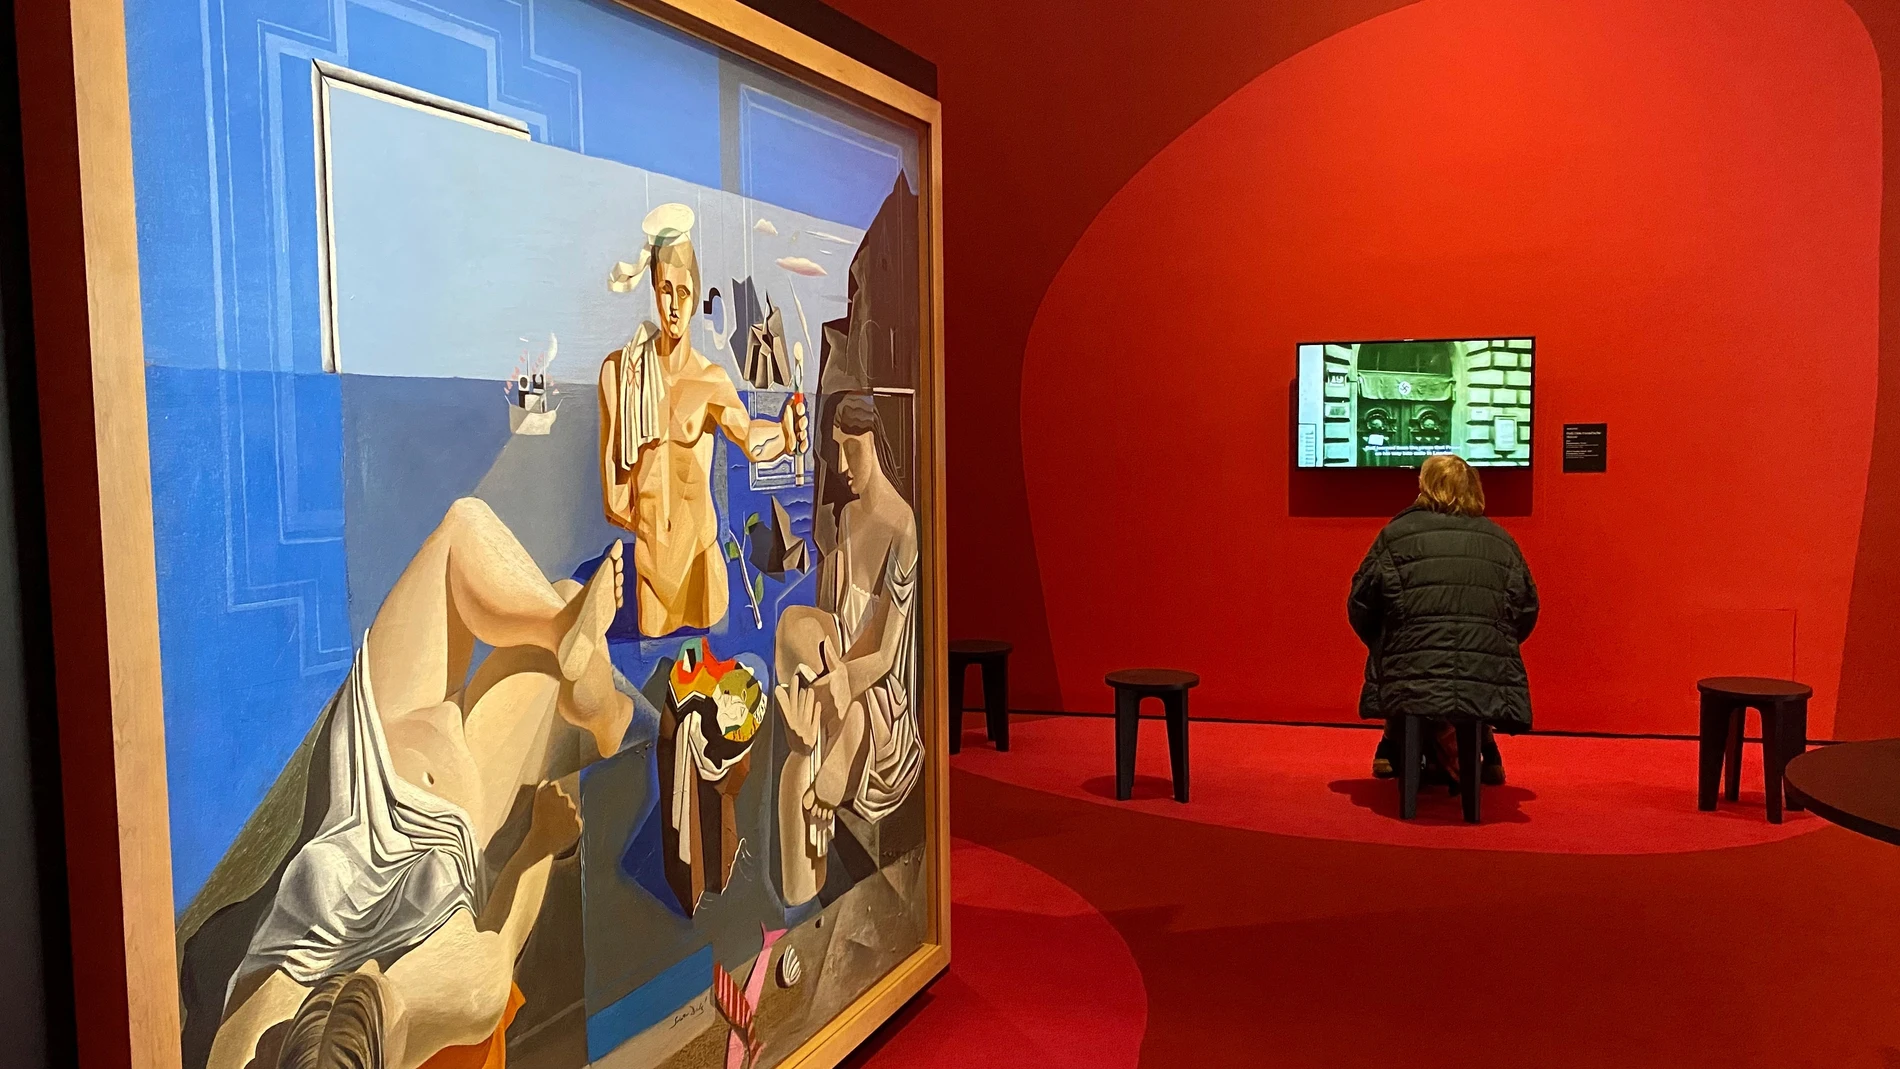 GRAF6974. VIENA (AUSTRIA), 27/01/2022.- La obra de Dalí "Acaemia neocubista" forma parte de la exposición "Dali-Freud: una obsesión" inaugurada en Viena. EFE/Marina Sera